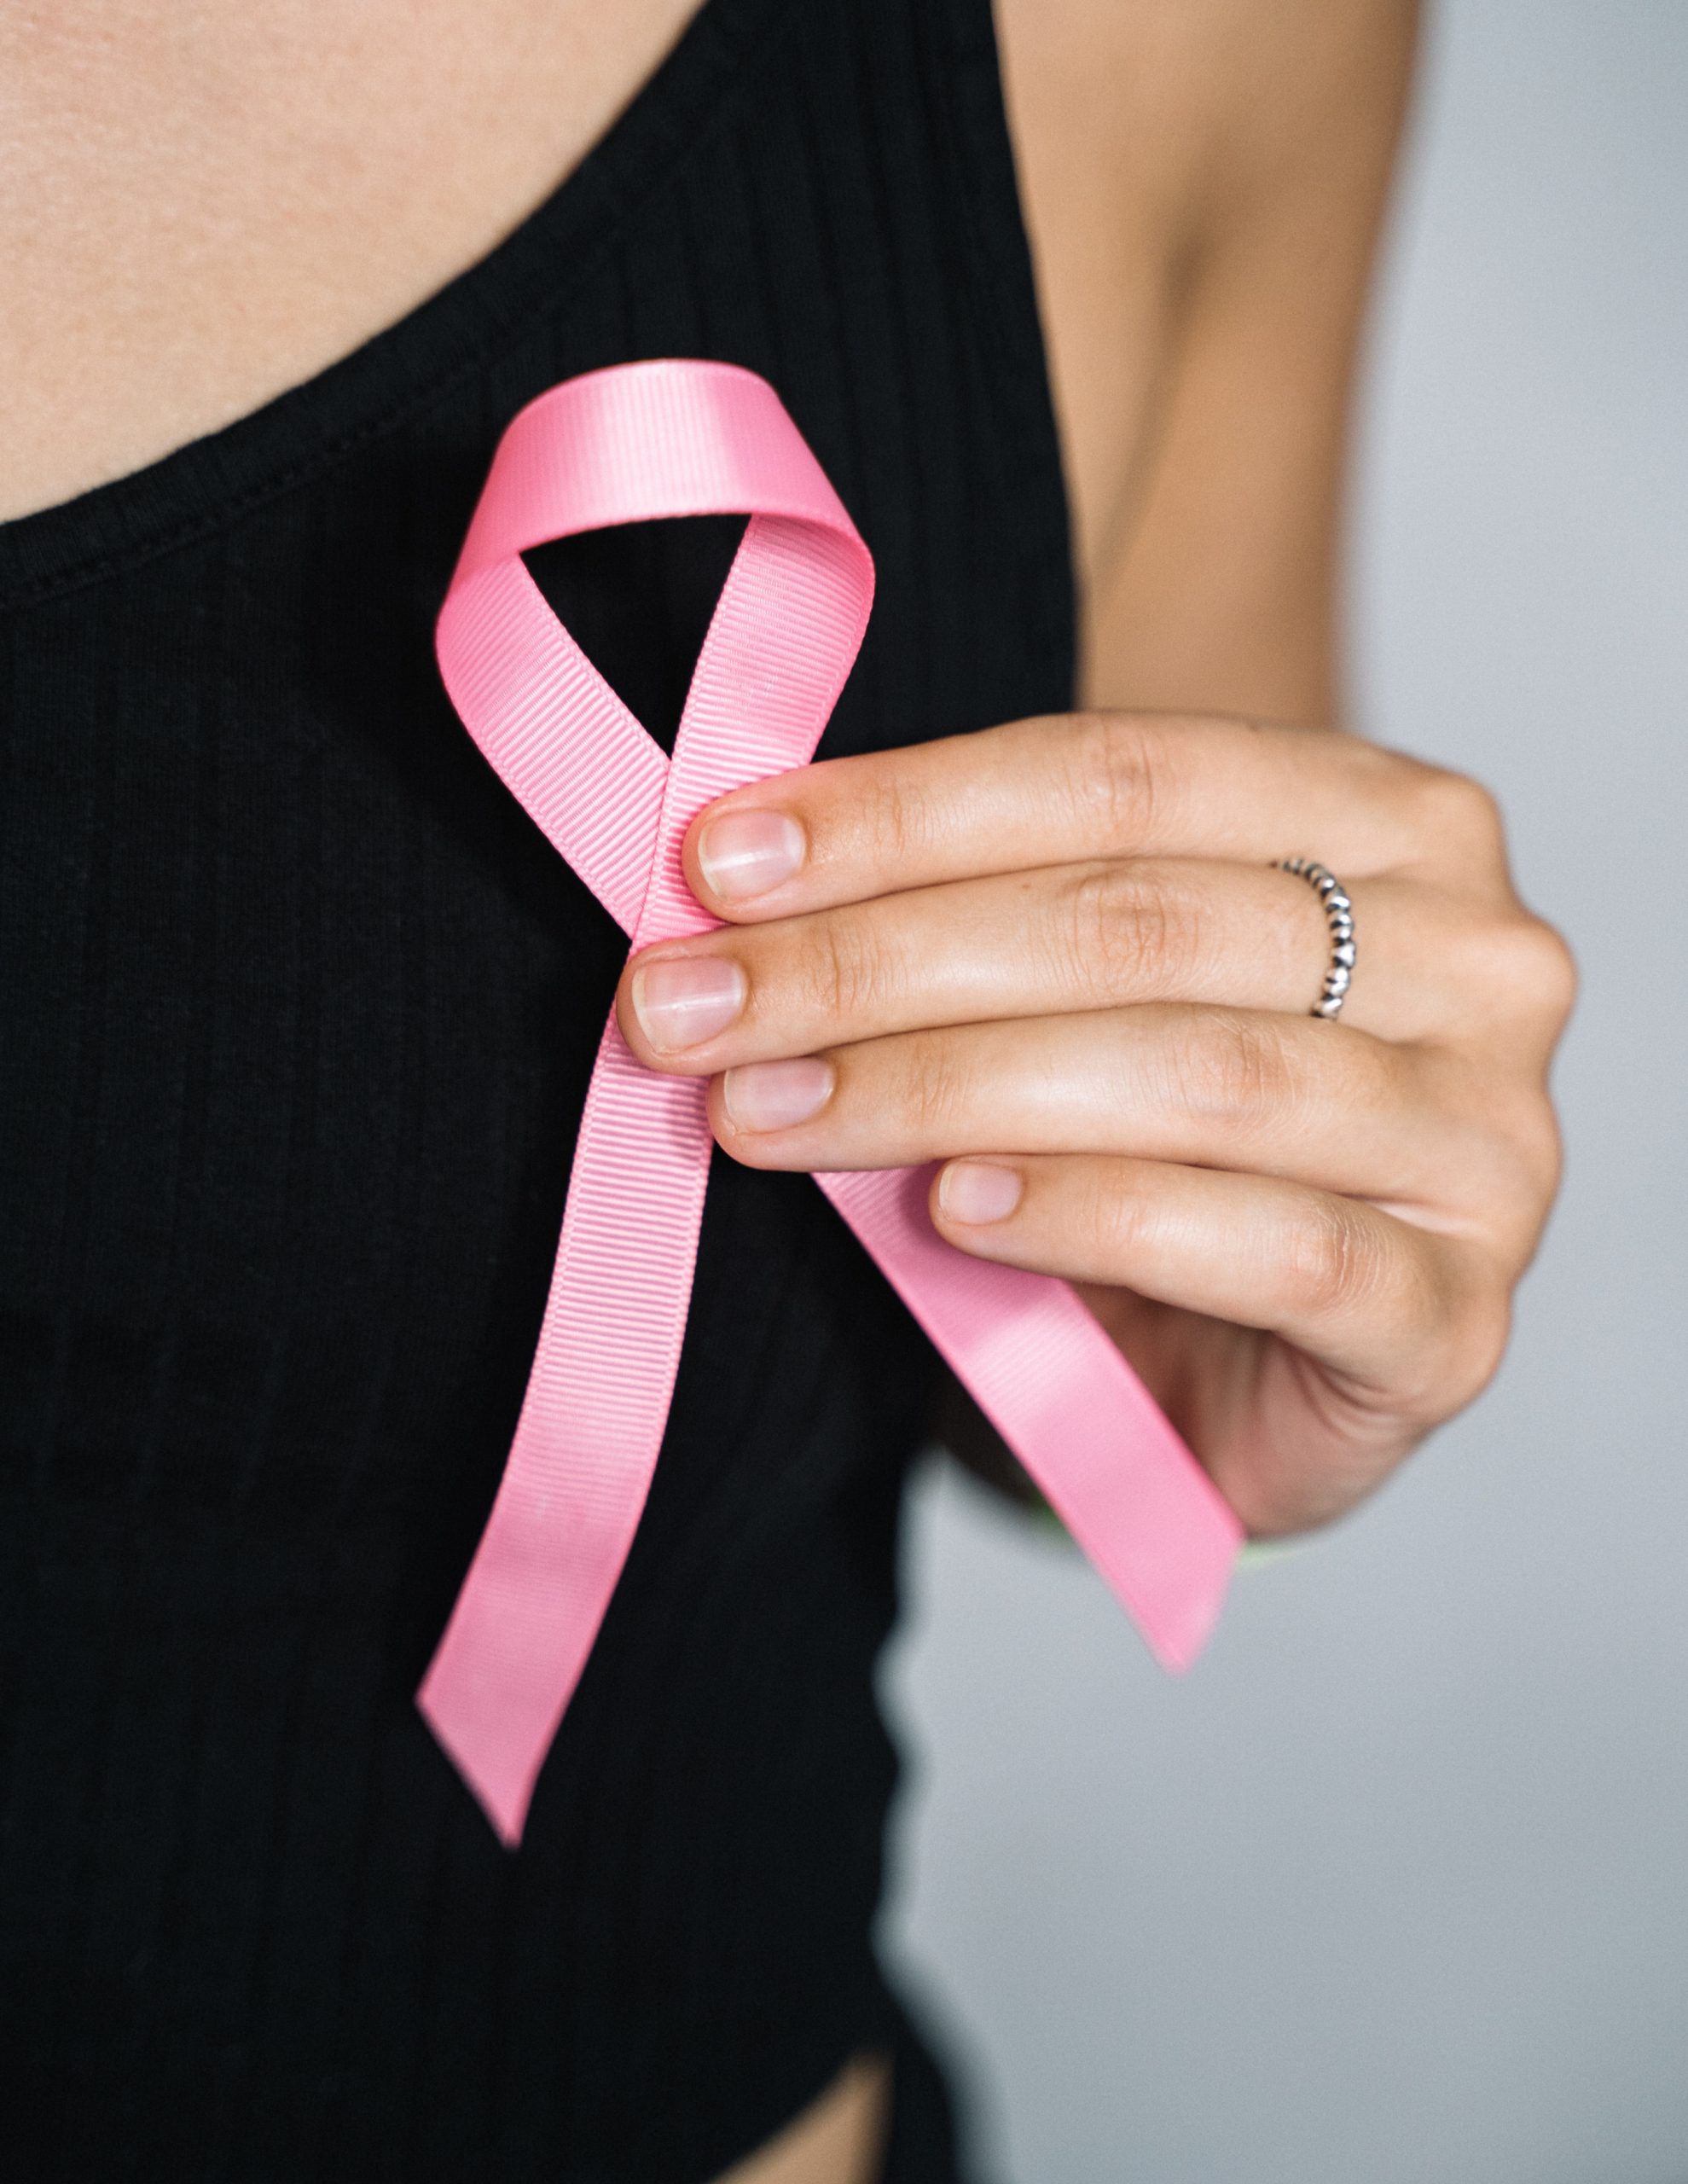 simptomi raka dojke